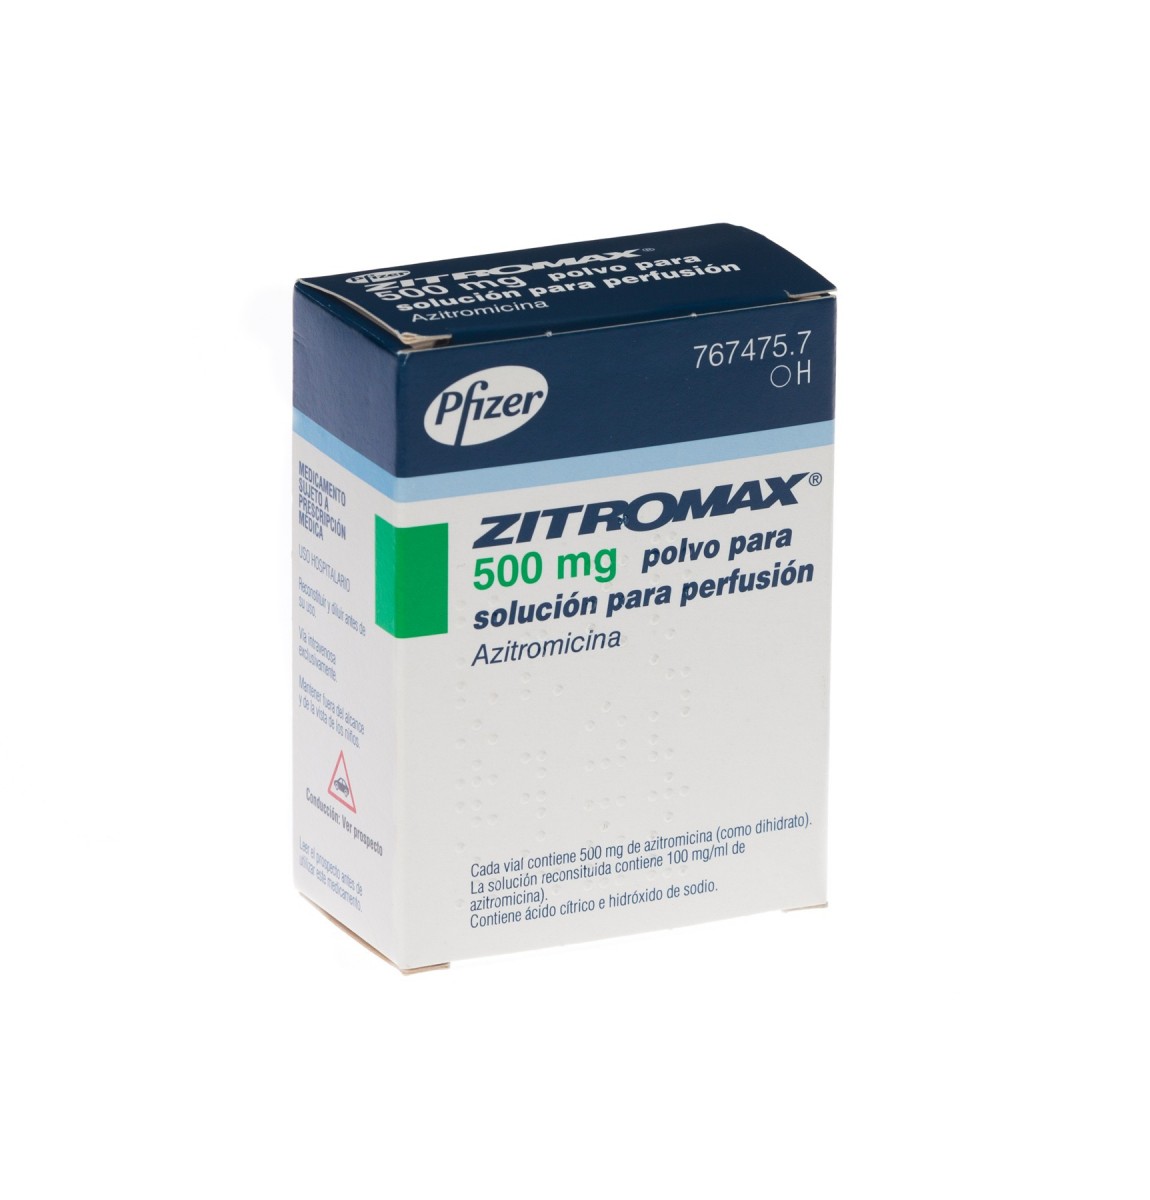 ZITROMAX 500 mg POLVO PARA SOLUCION PARA PERFUSION, 1 vial fotografía del envase.